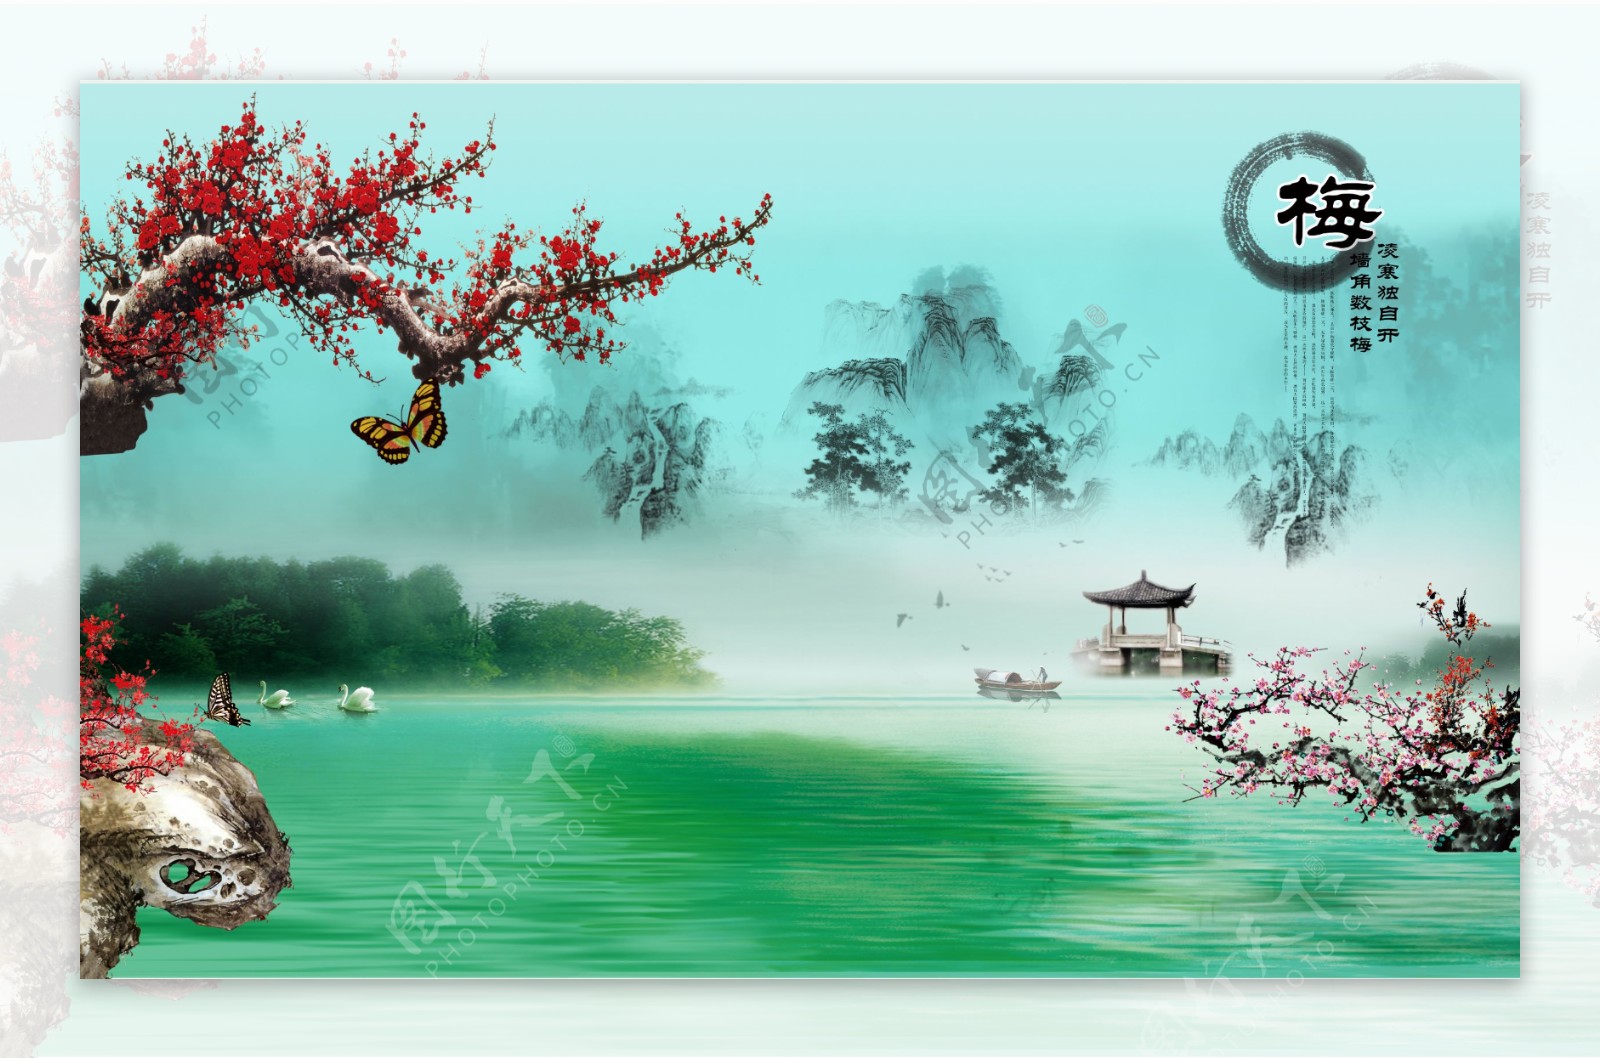 中国风山水画背景墙图片